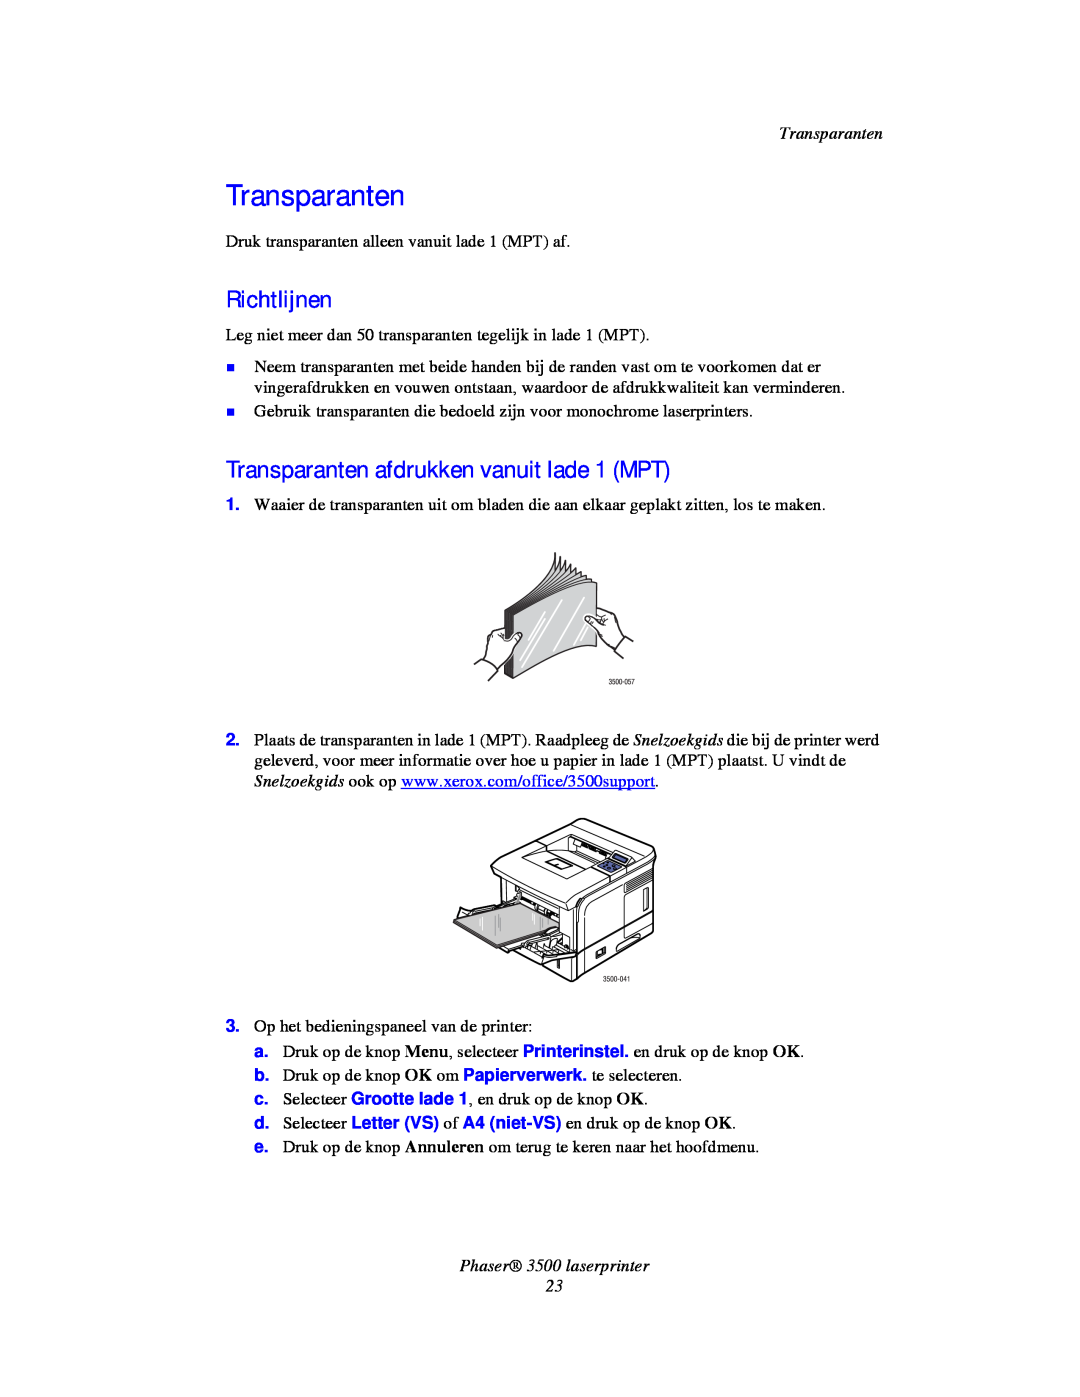 Xerox manual Richtlijnen, Transparanten afdrukken vanuit lade 1 MPT, Phaser 3500 laserprinter 23 